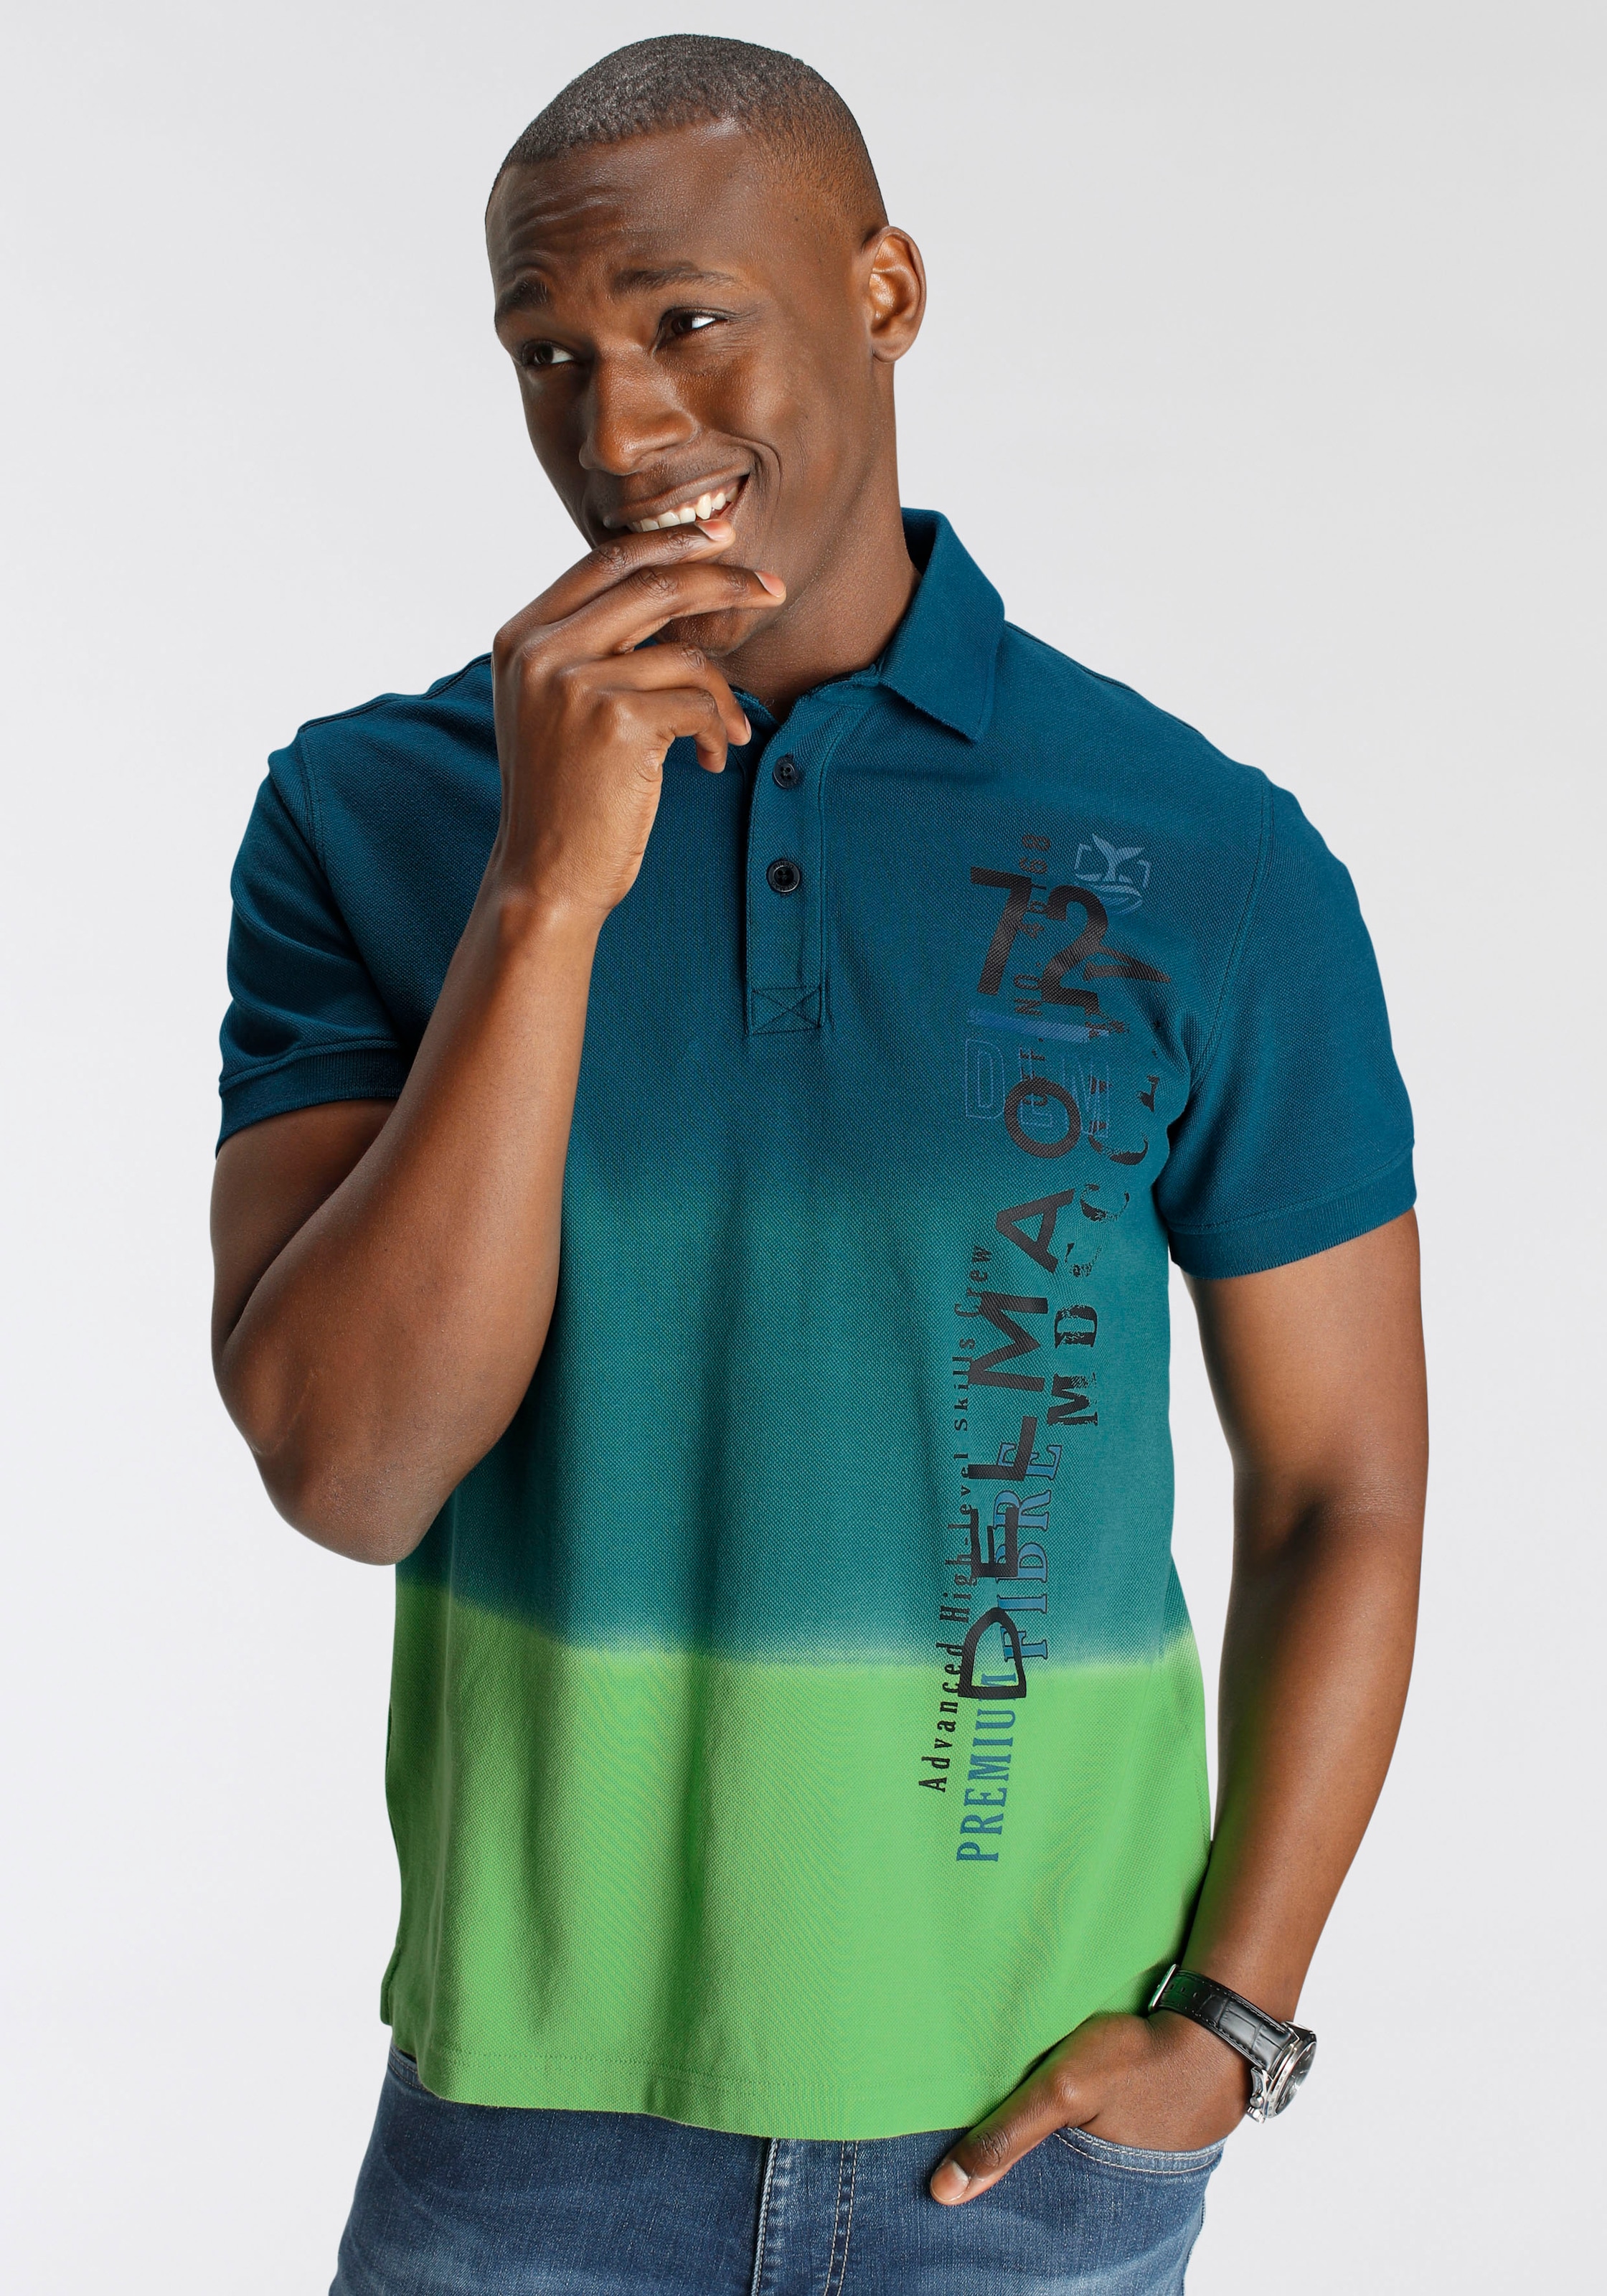 DELMAO Poloshirt, mit modischem Farbverlauf und Print- NEUE MARKE!